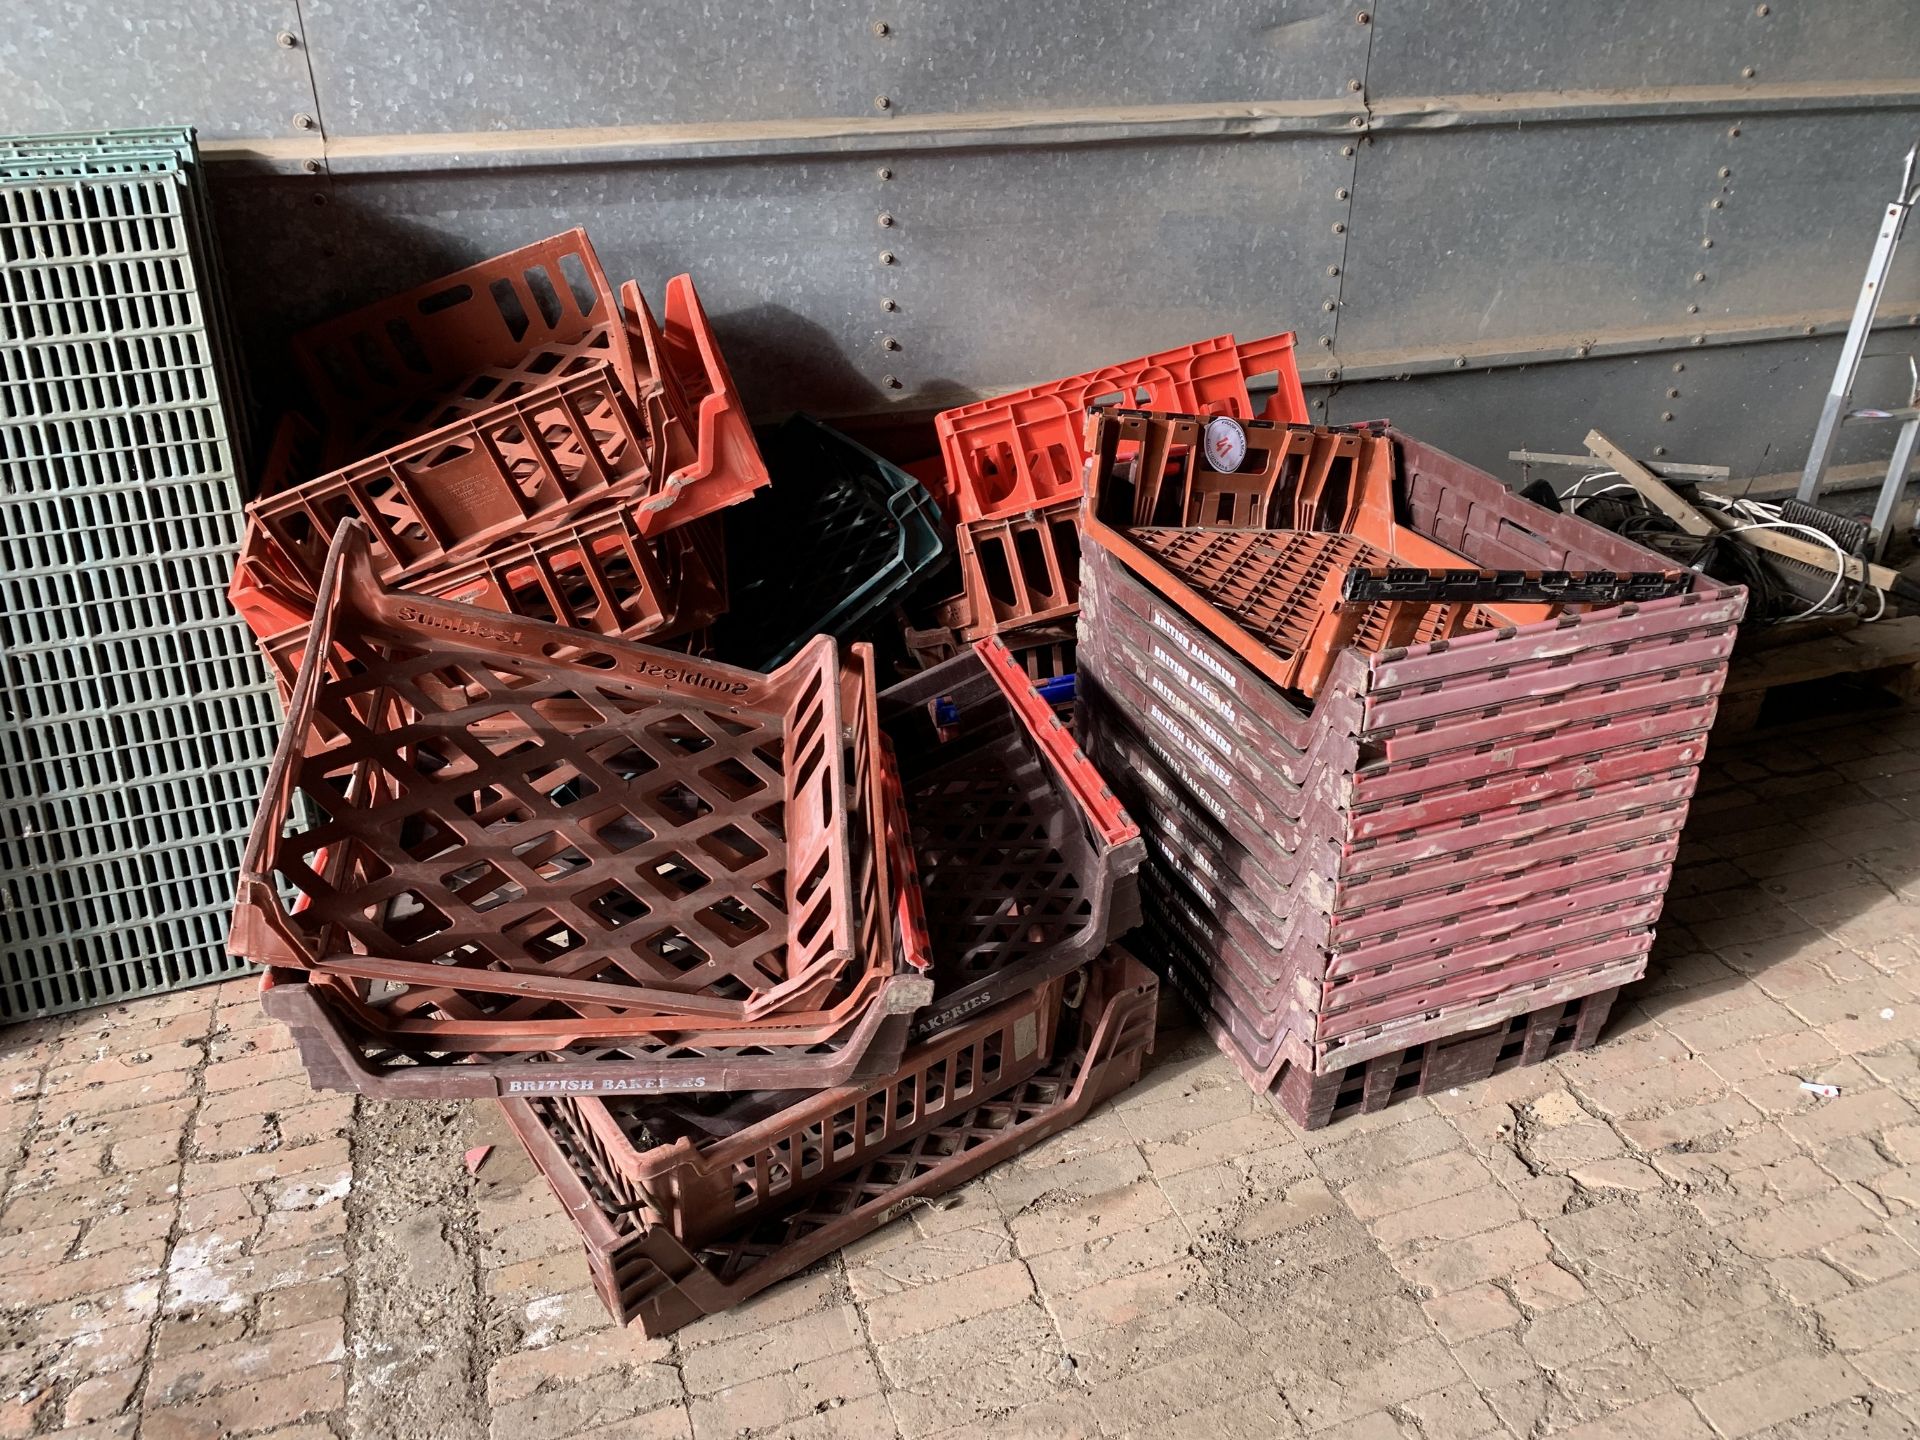 Heap of bread baskets